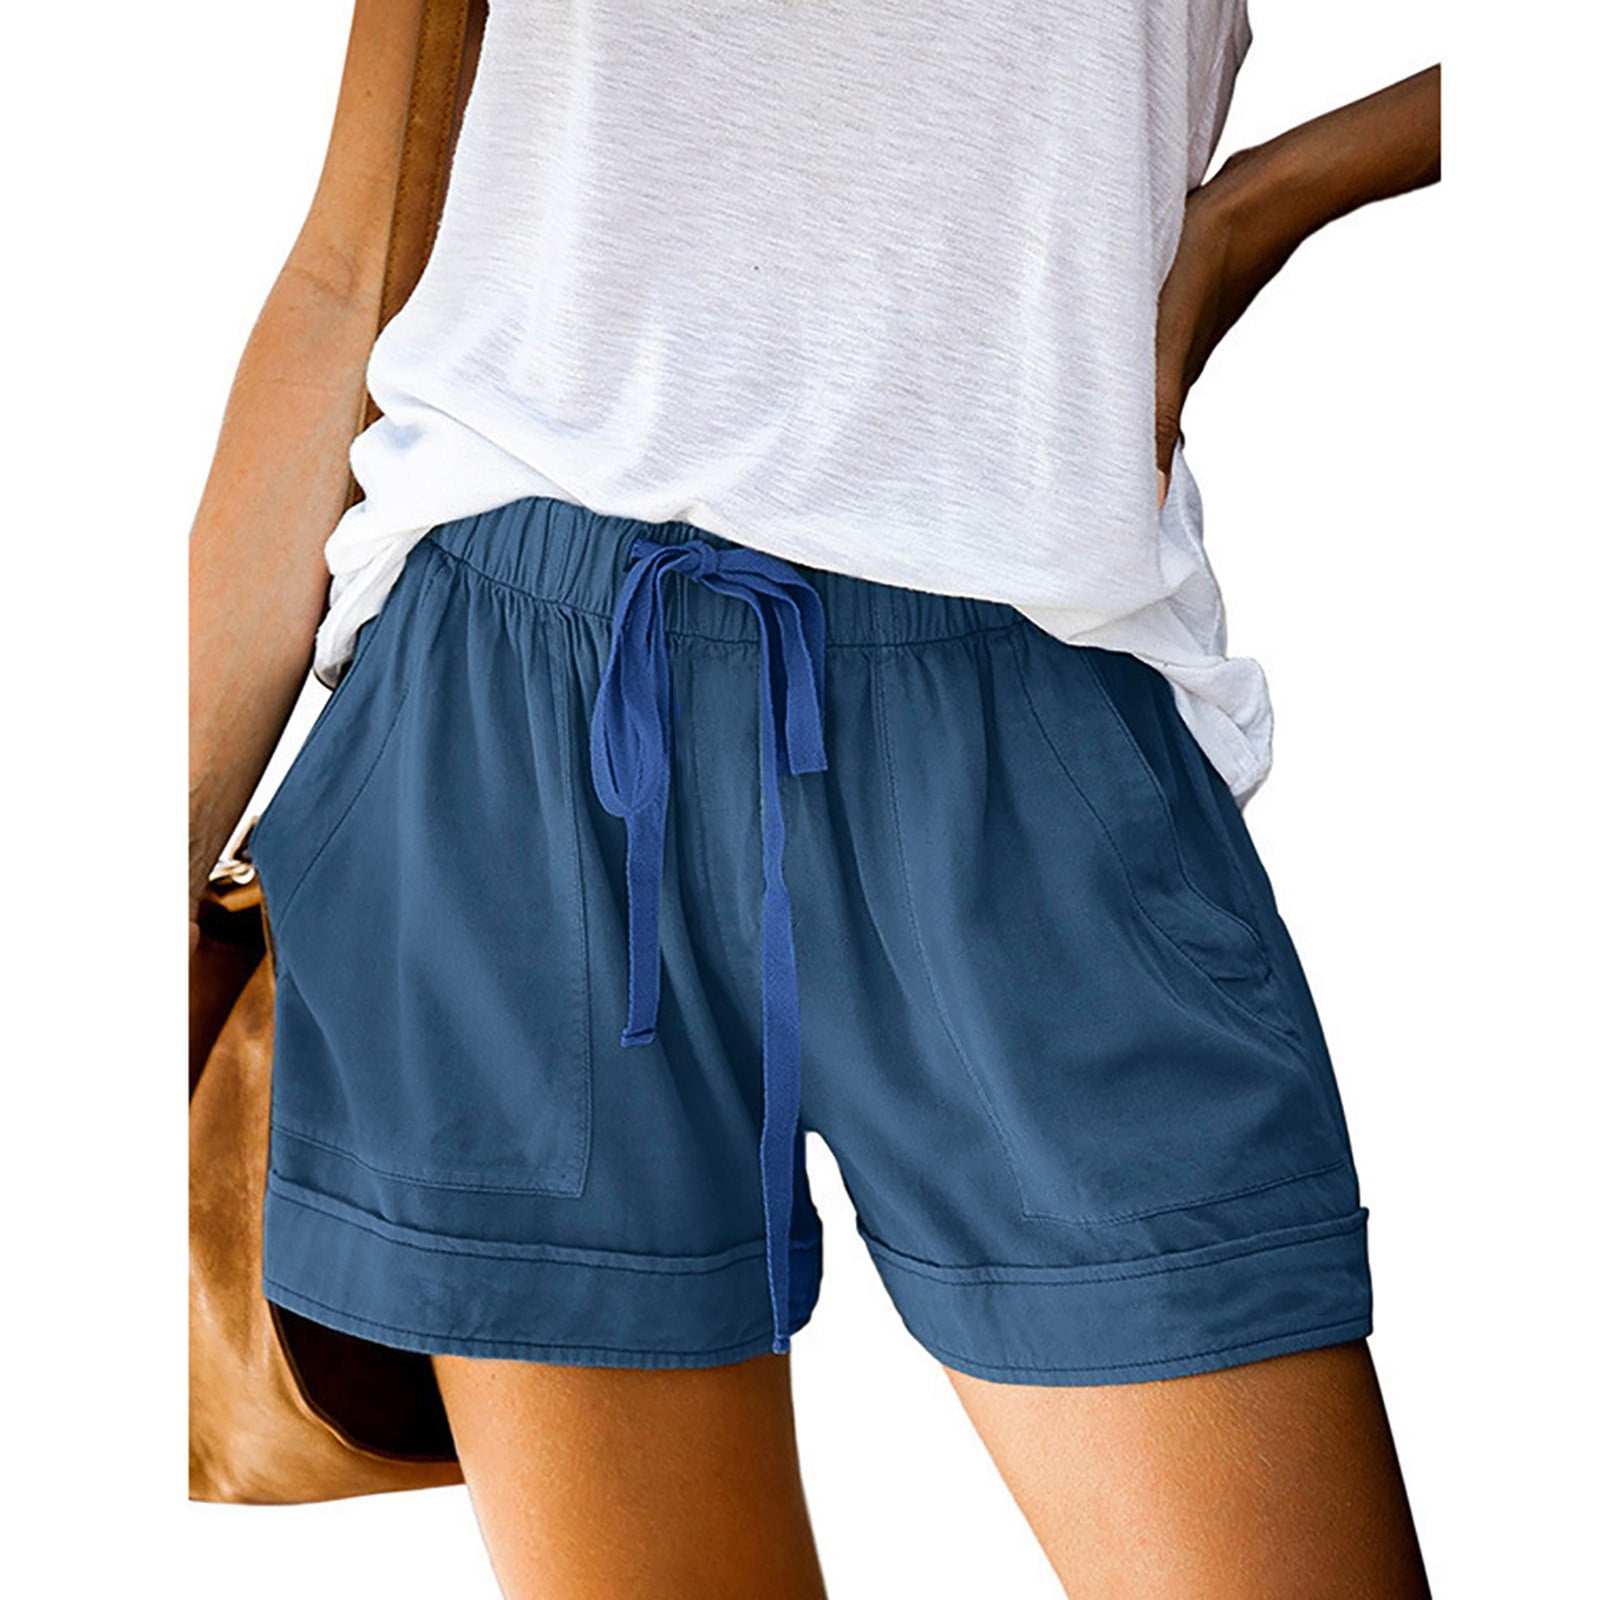 kpoplk Basketball Shorts Women,Women's Running Shorts Summer High Waisted  Drawstring Causal Workout Sport Shorts with Pockets(Light Blue,XXL)